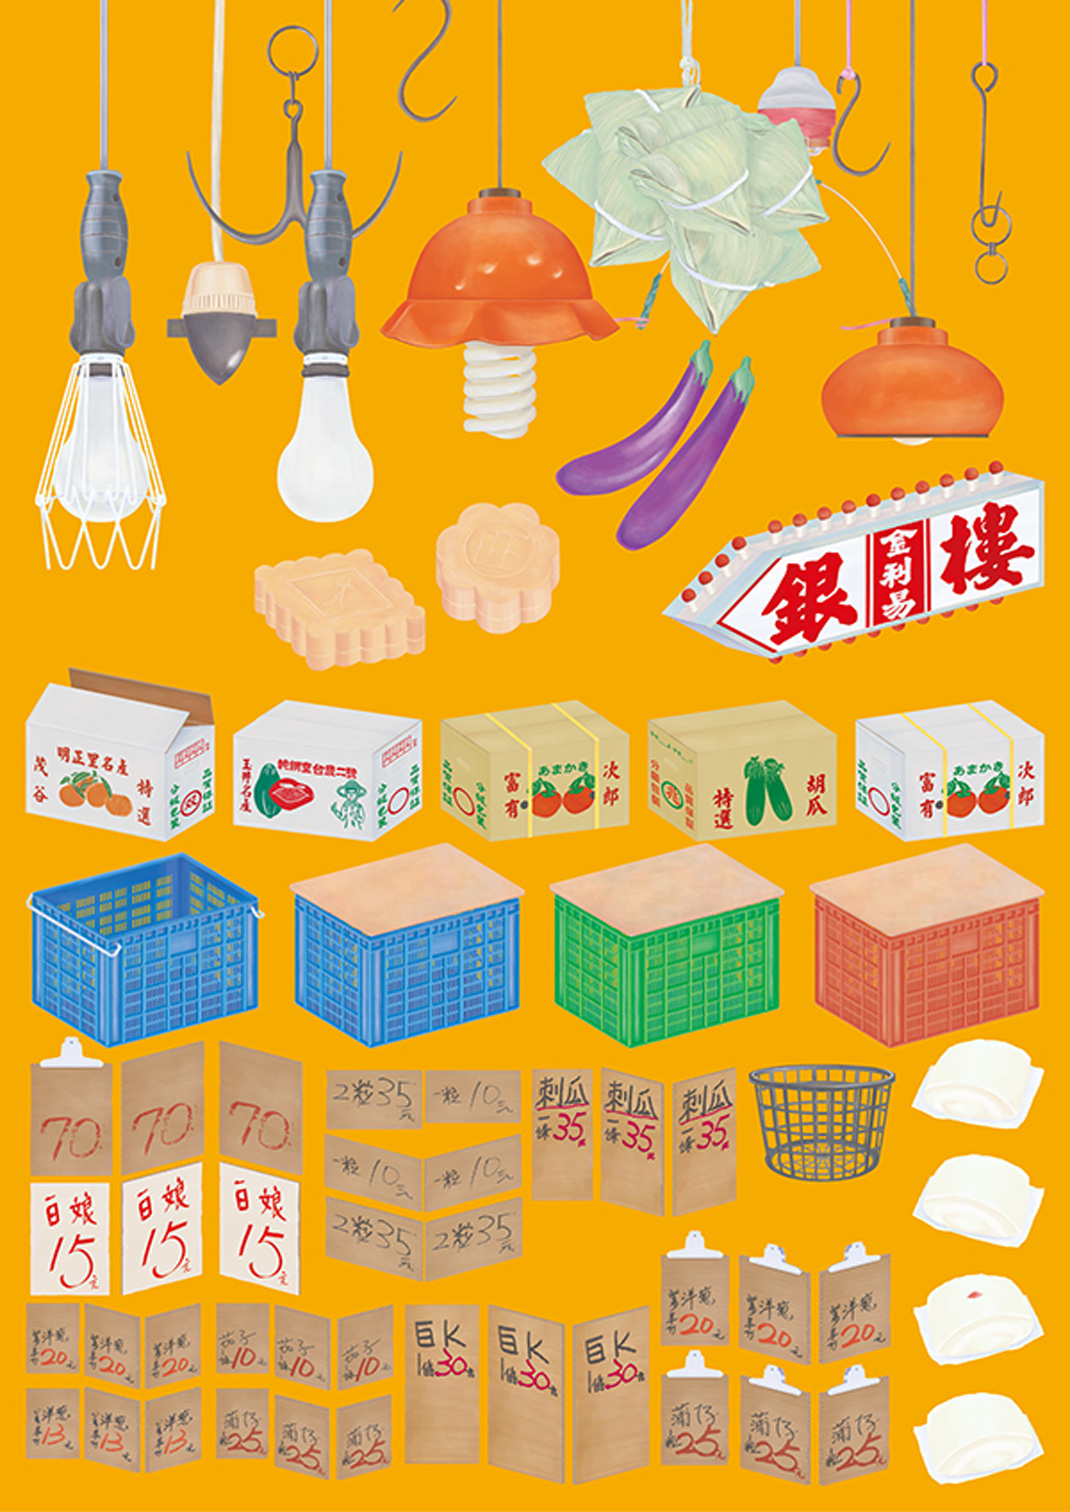 踅菜市仔台南菜市场 台湾 菜市场 字体设计 插画设计 美食地图 logo设计 vi设计 空间设计